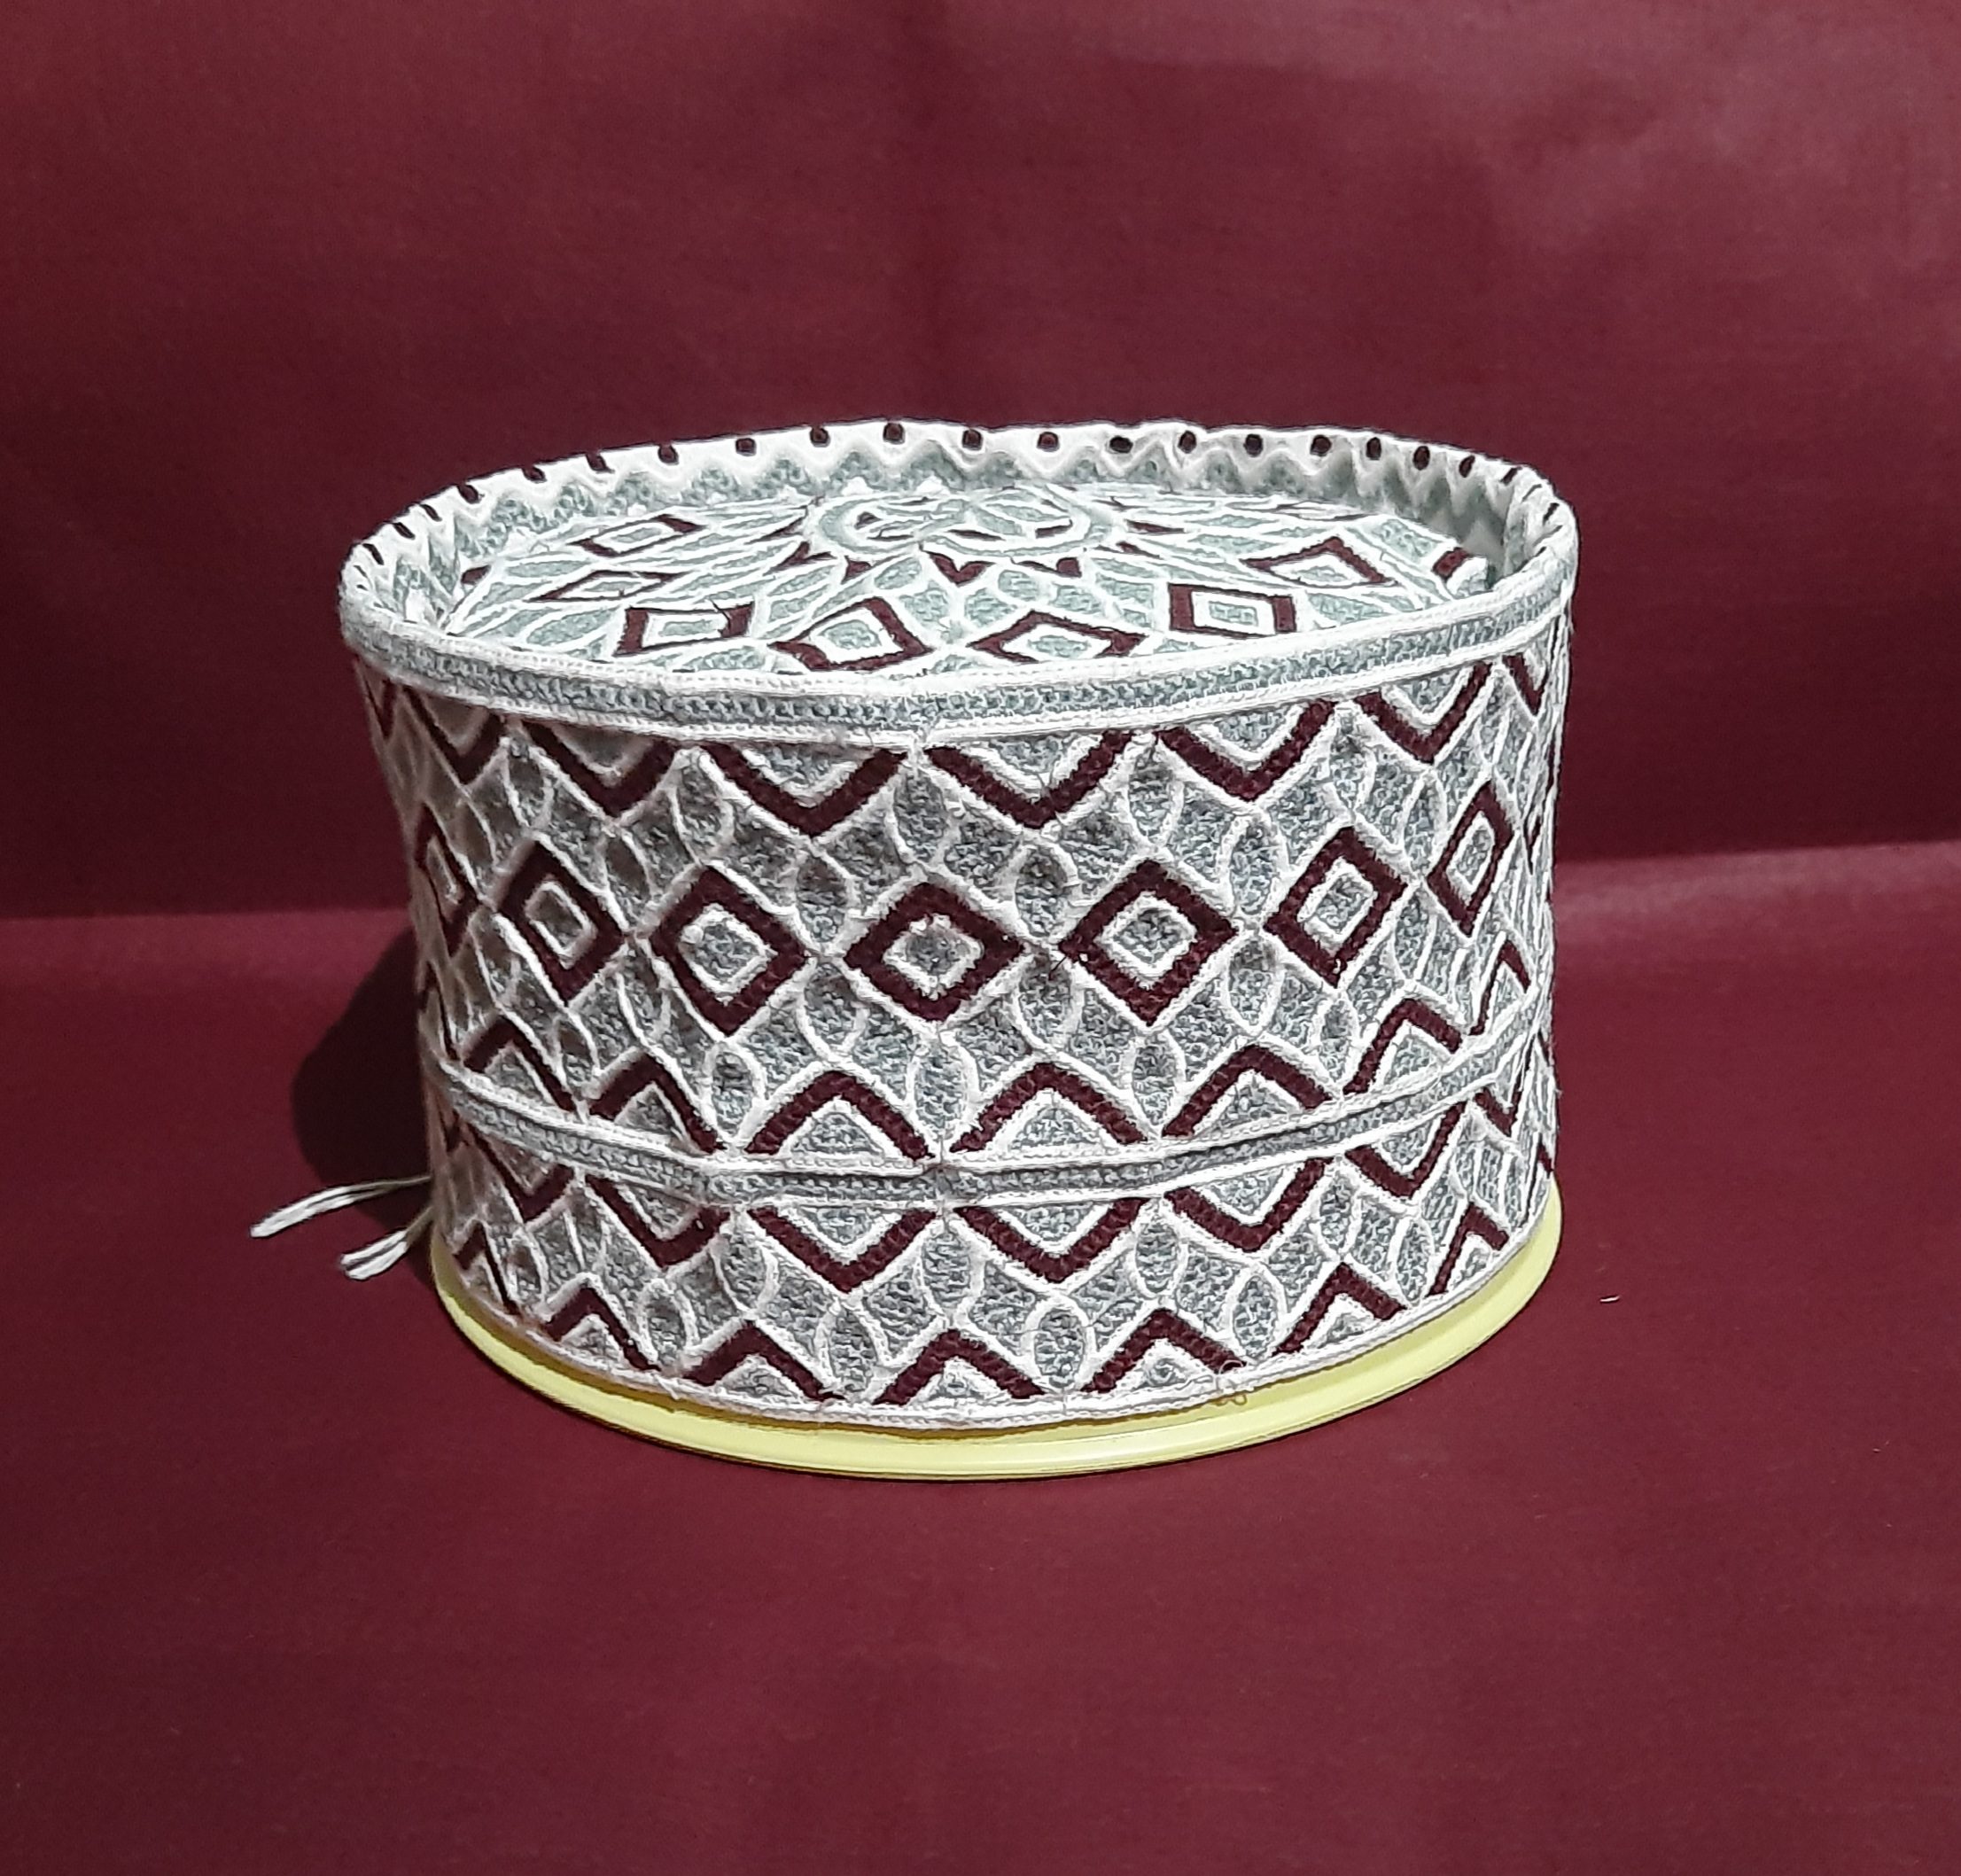 New Original Omani Barkati Cap Soft Cotton Material modal no. 109 Size 21.5 (Barkati Topi)